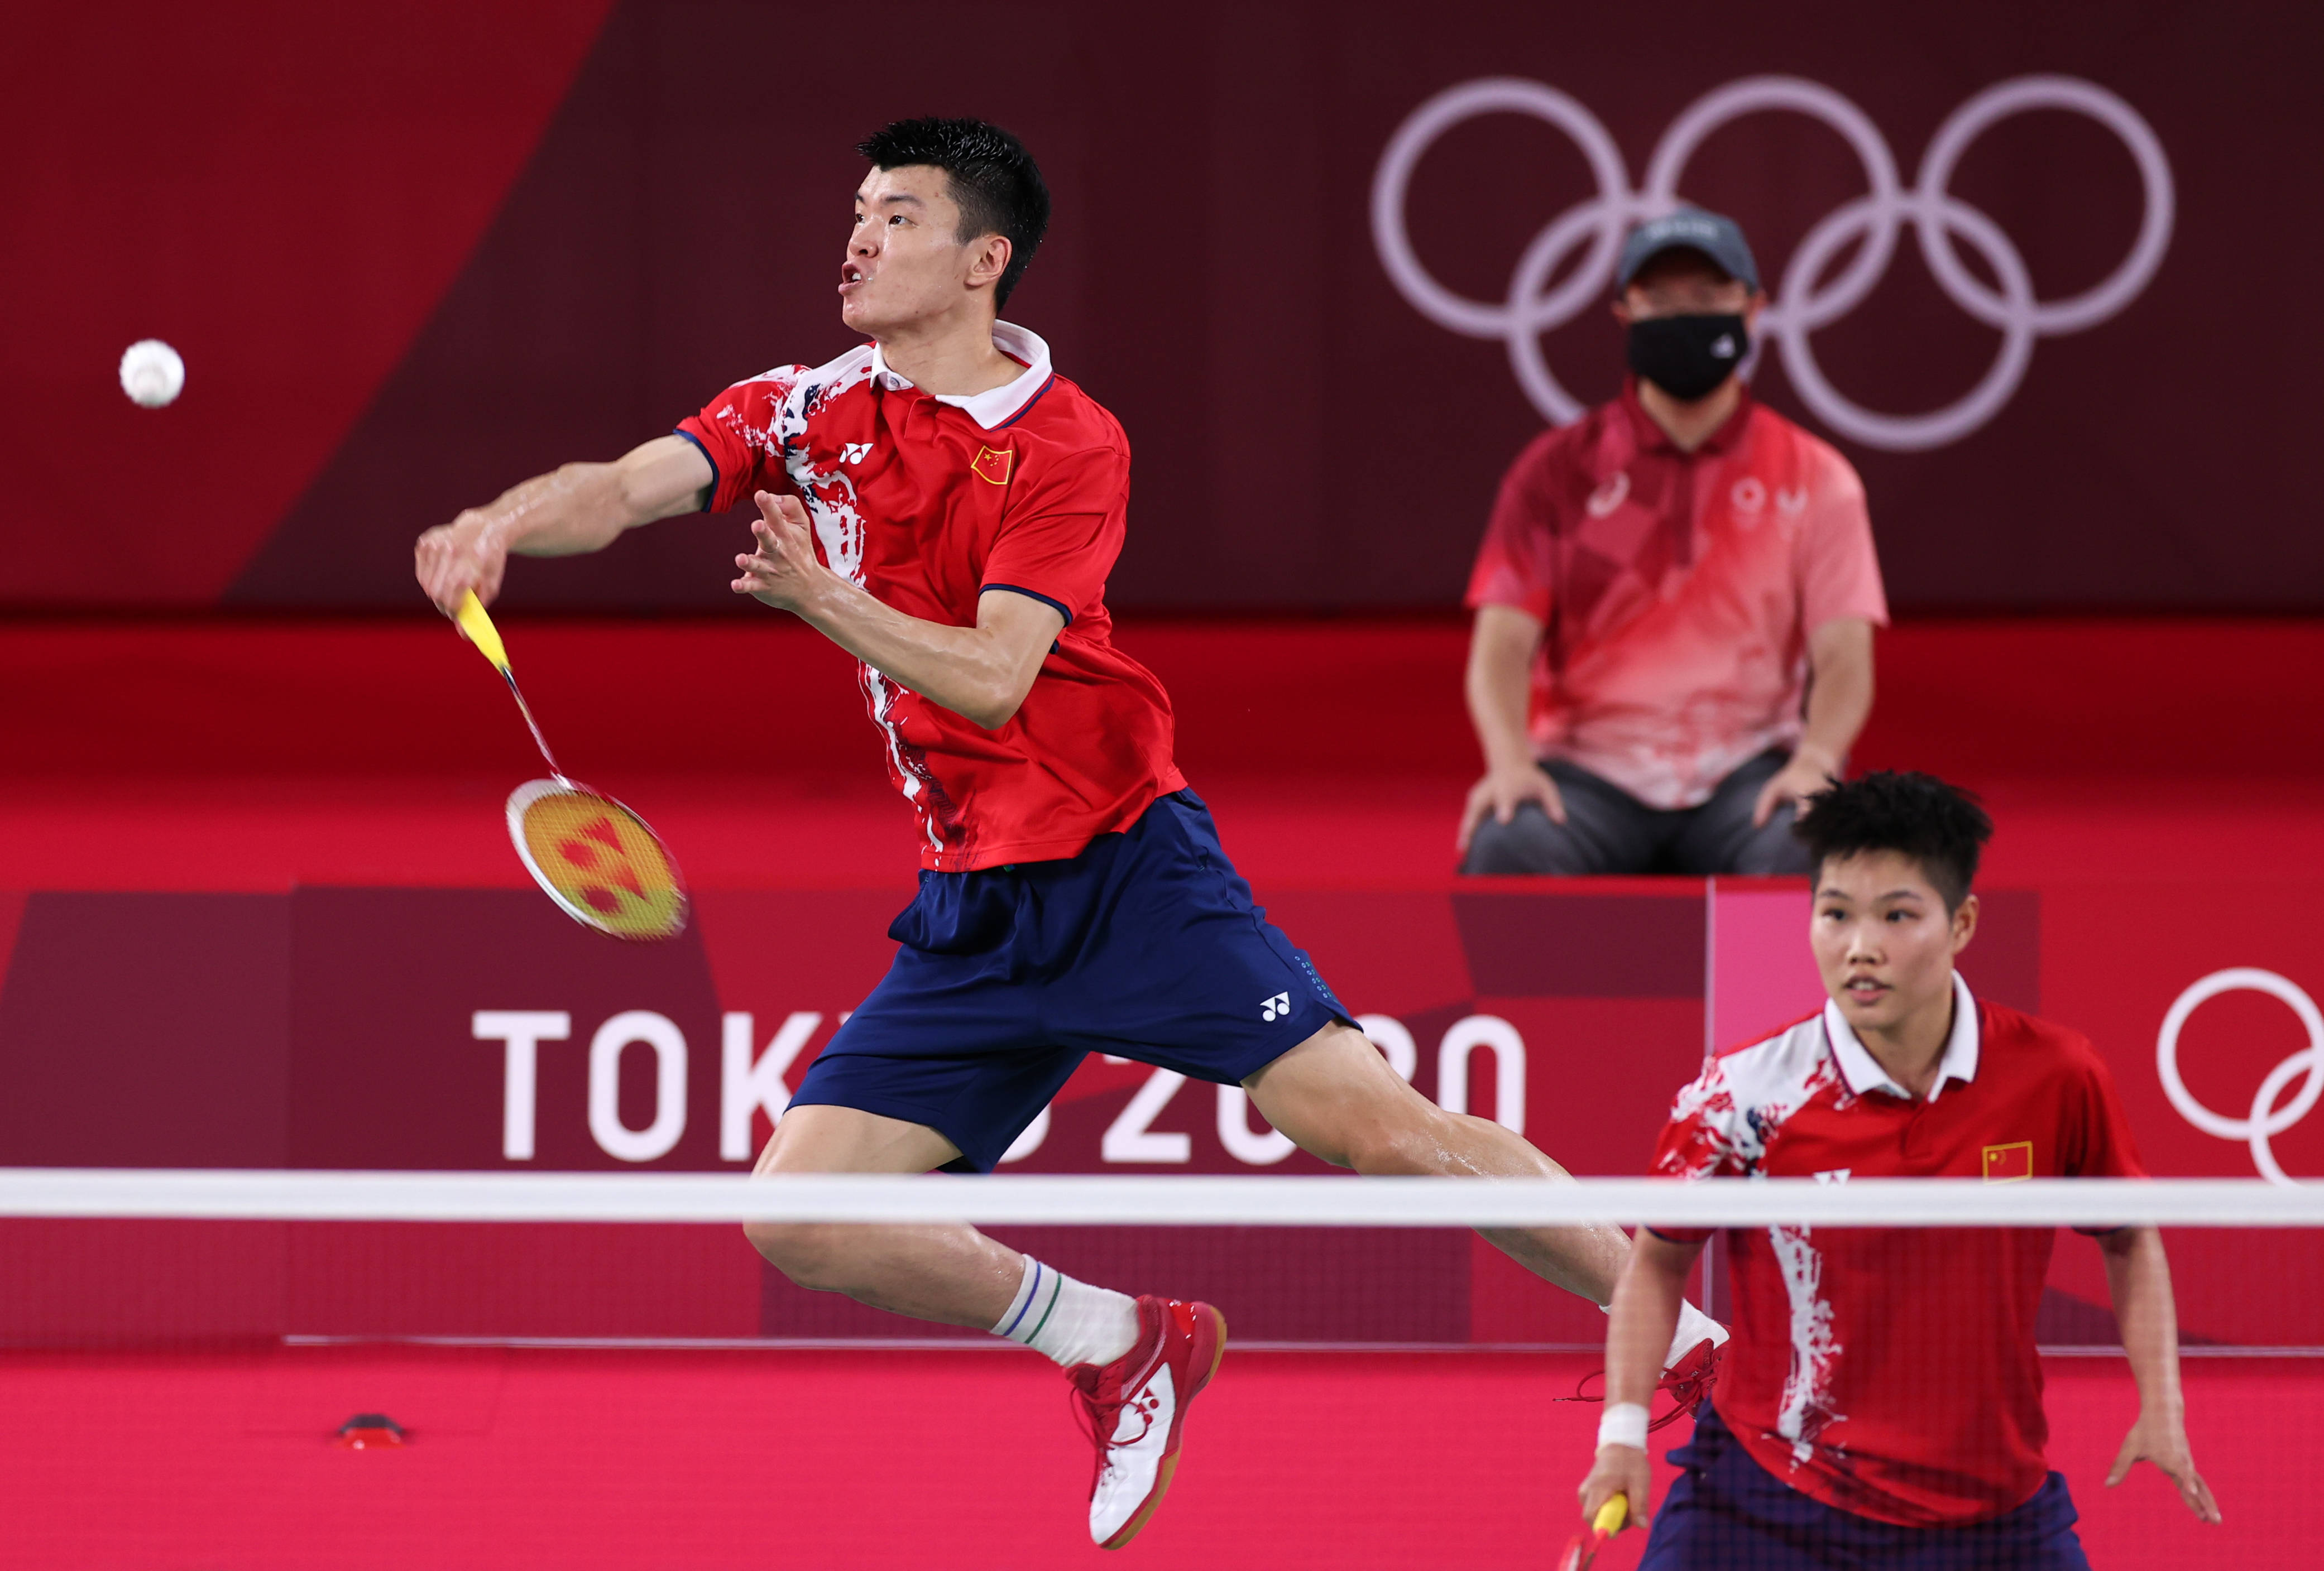 当日,在东京奥运会羽毛球混双半决赛中,中国组合王懿律/黄东萍战胜